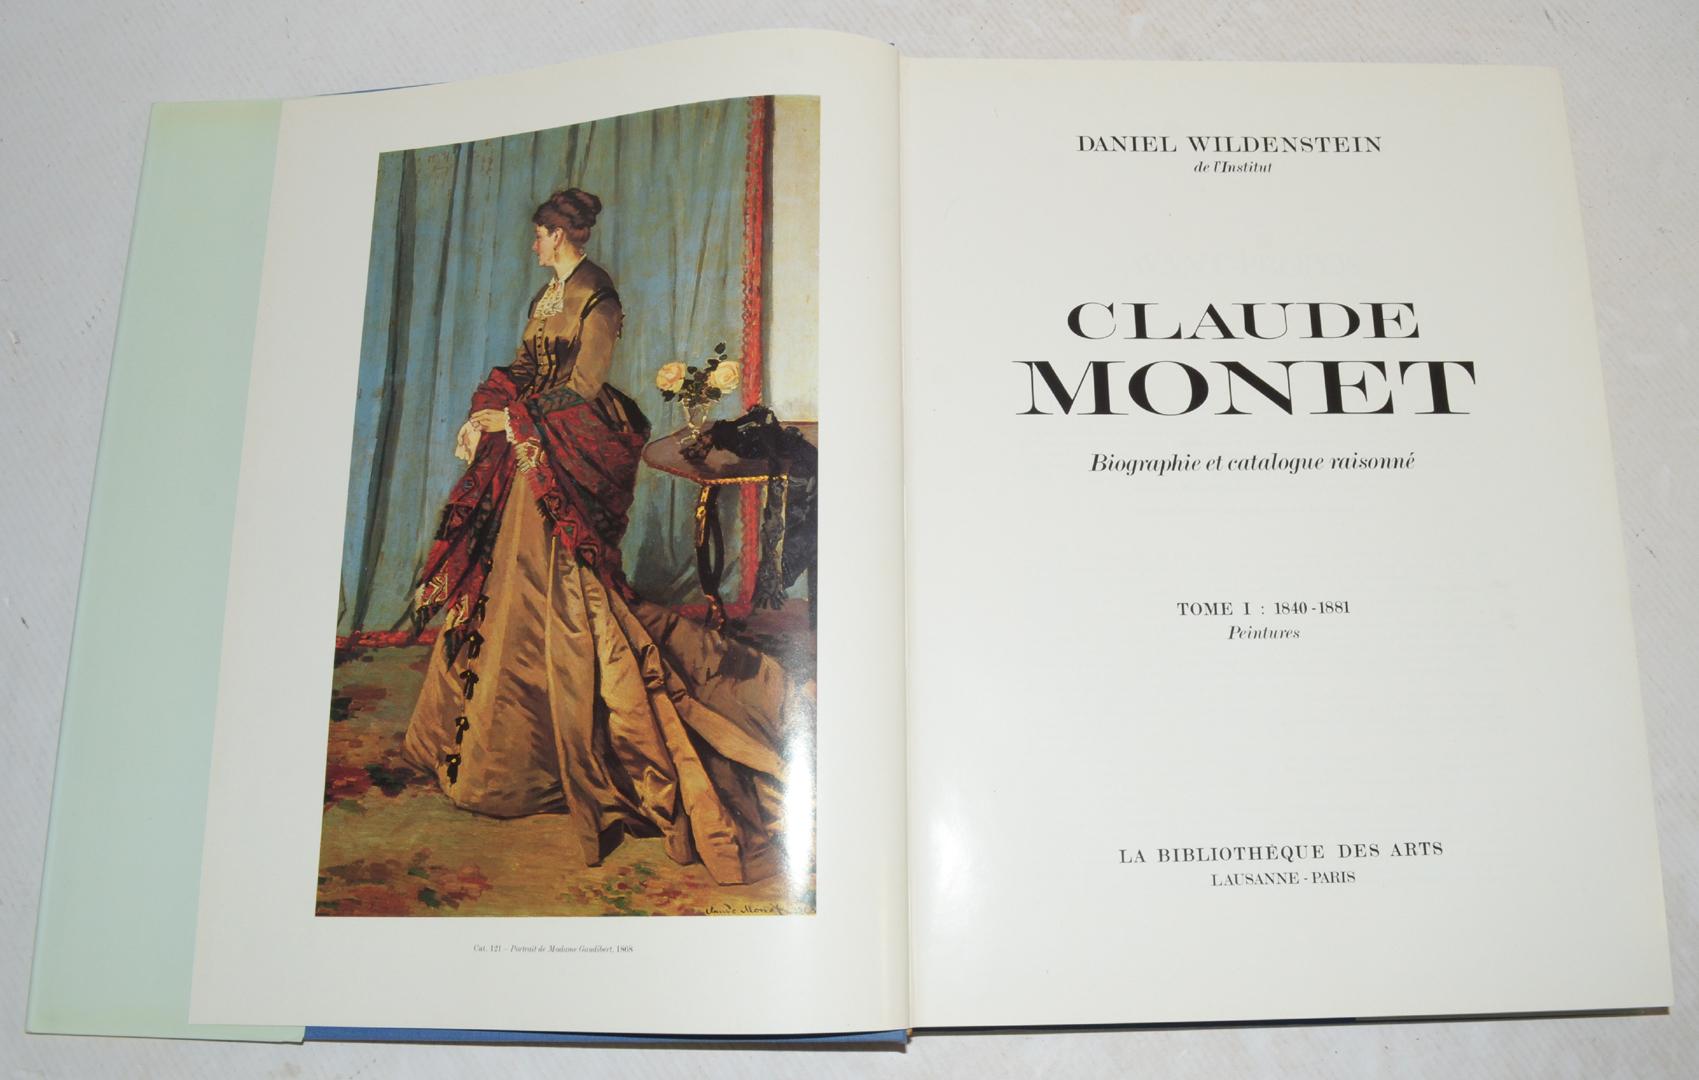 MONET C. CLAUDE MONET - Biographie et Catalogue Raisonné Vol 1-4.